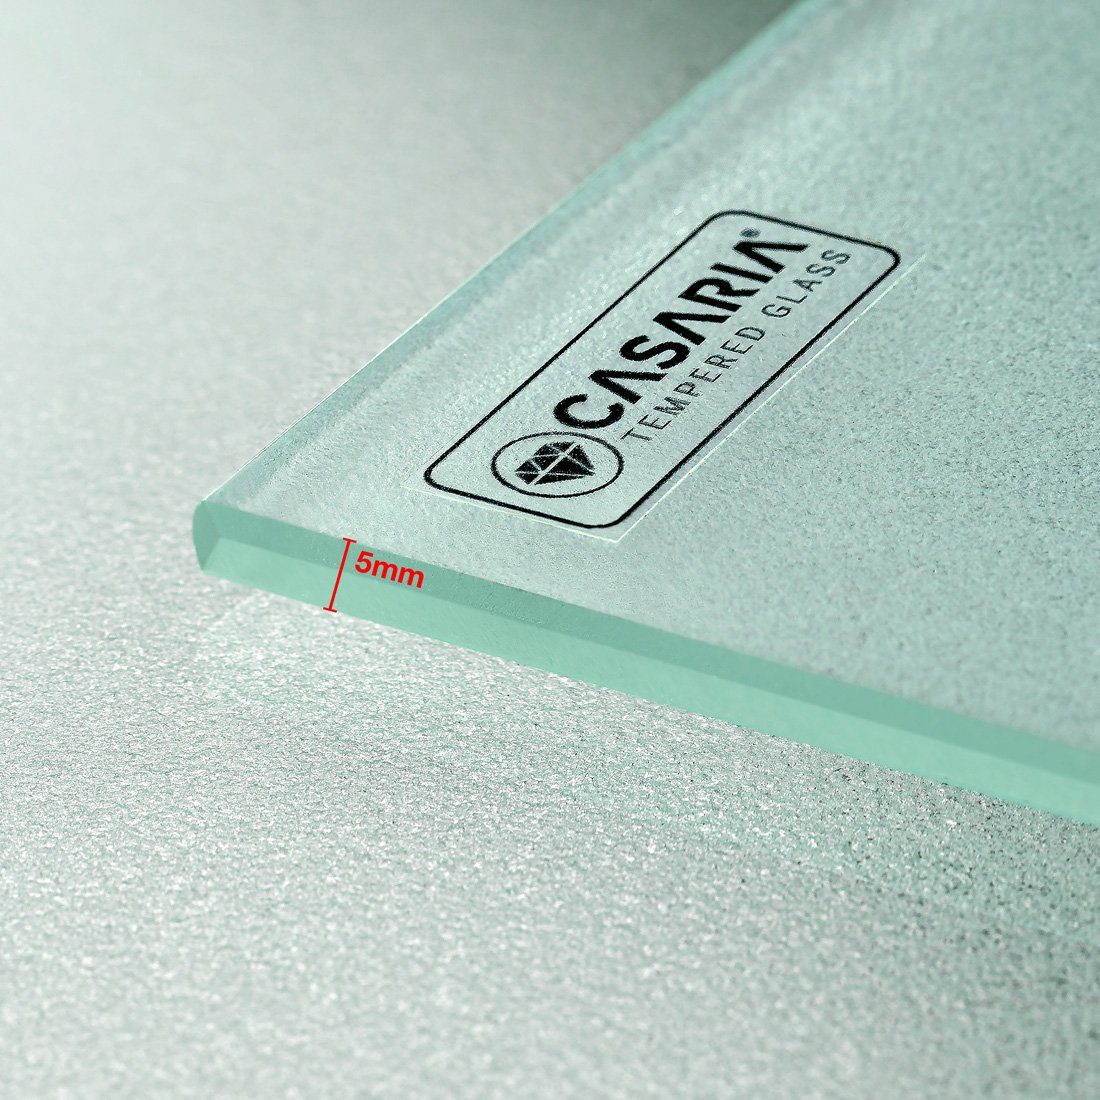 Casaria Gartentisch mit Braun Glasplatte Sicherheits (1-St), 190x90x74cm Polyrattan Ablage